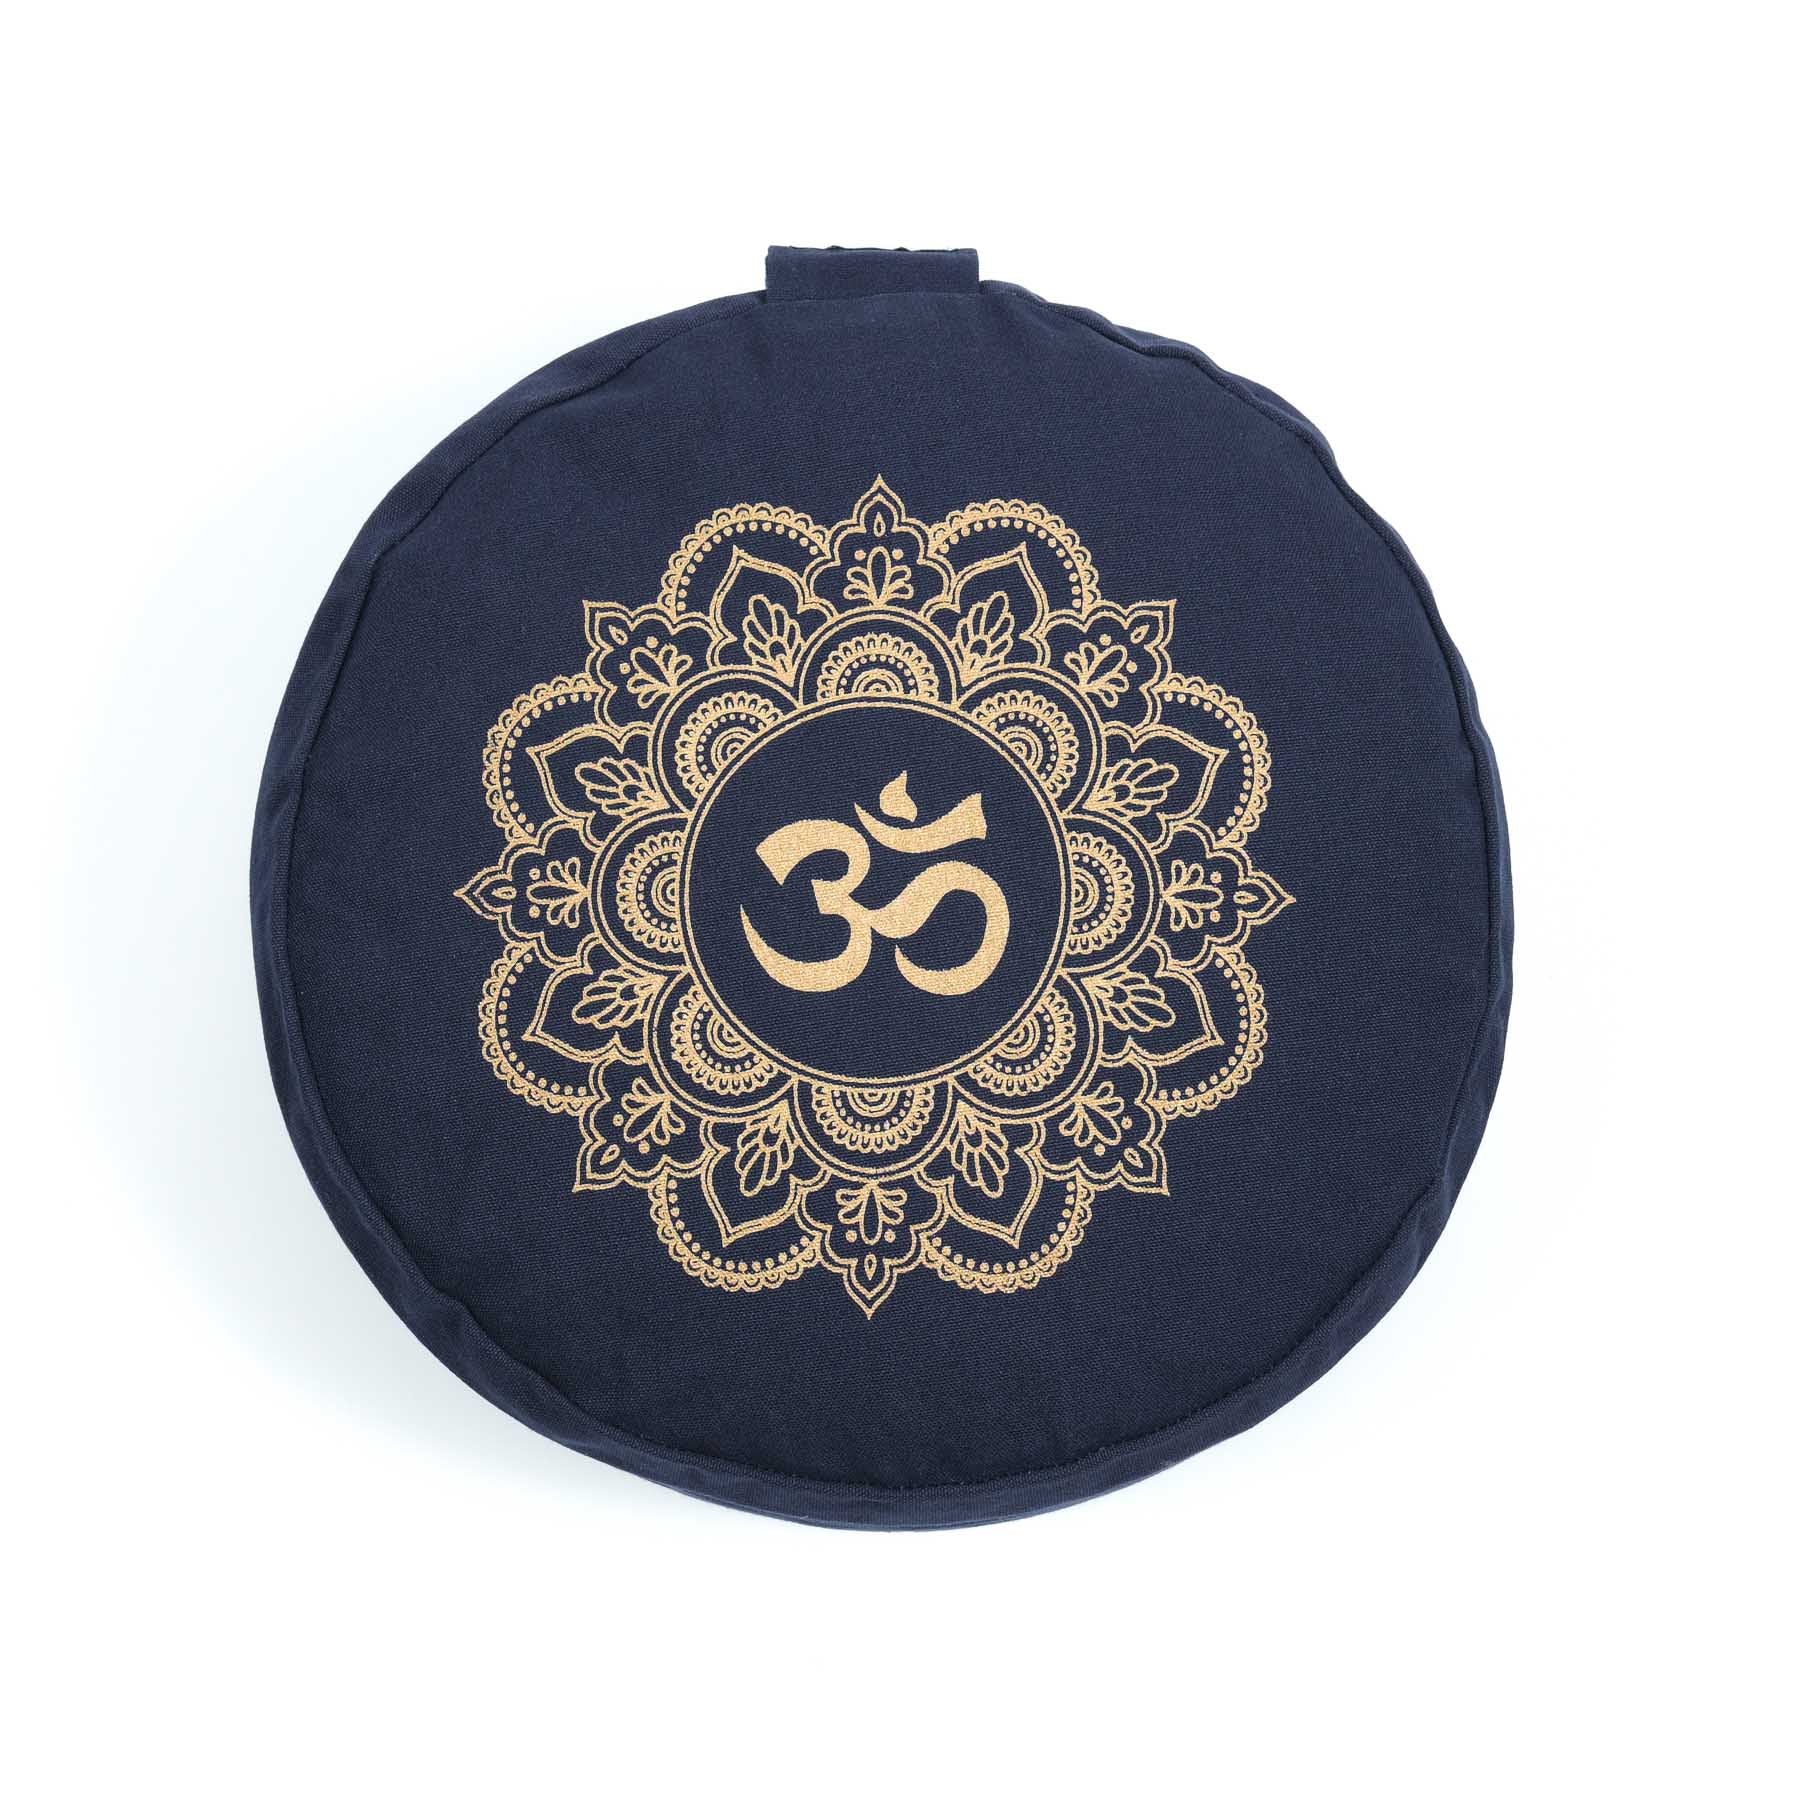 Cuscino da meditazione rotondo Mandala OM stampa oro blu navy